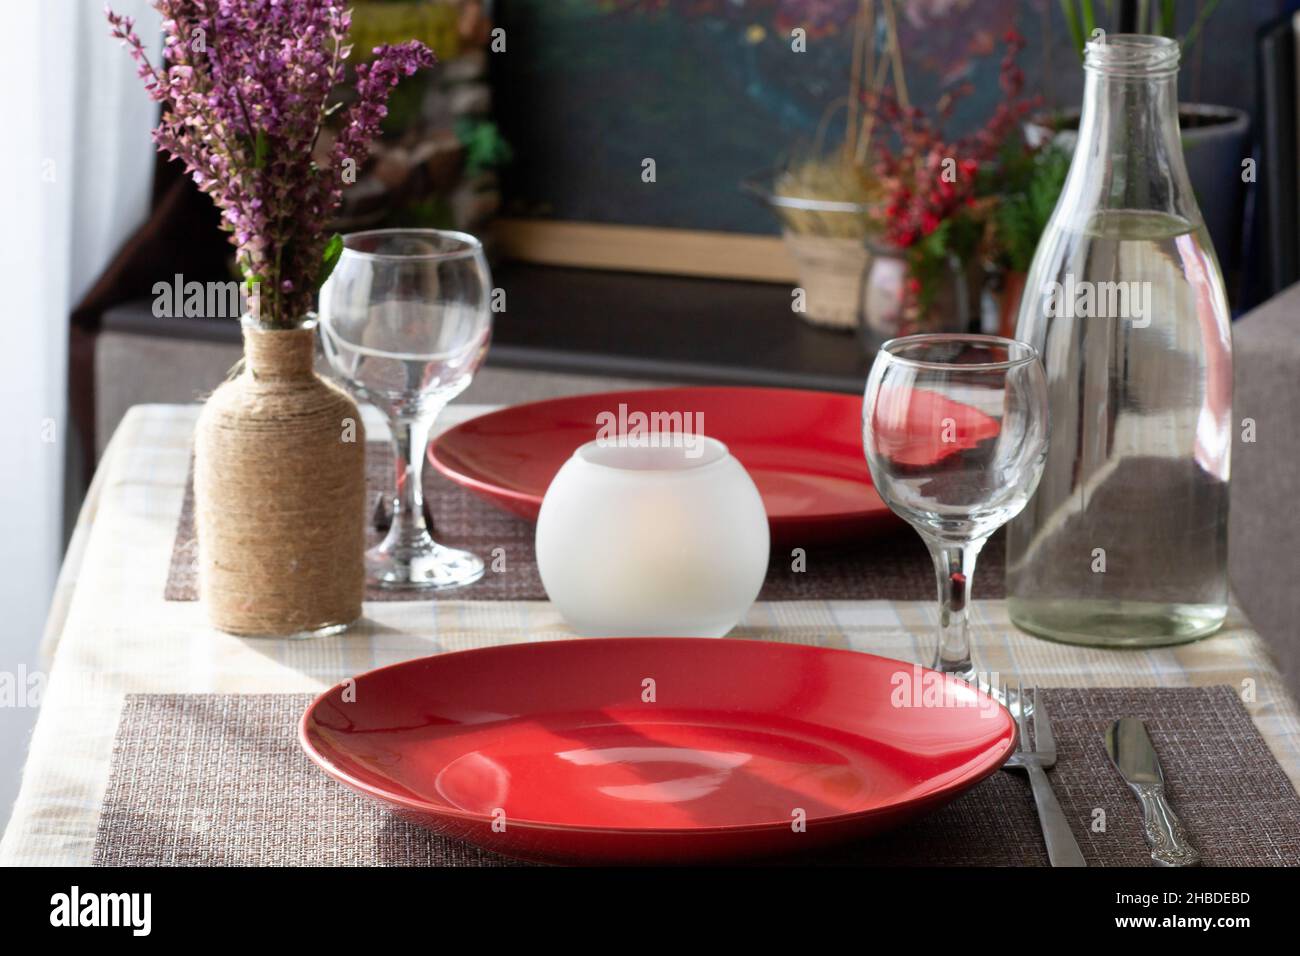 Table avec vaisselle: Vide sans repas assiettes rouges, verres à vin, bouteille d'eau et couteau et fourchette pour dîner romantique pour deux personnes à la maison Banque D'Images